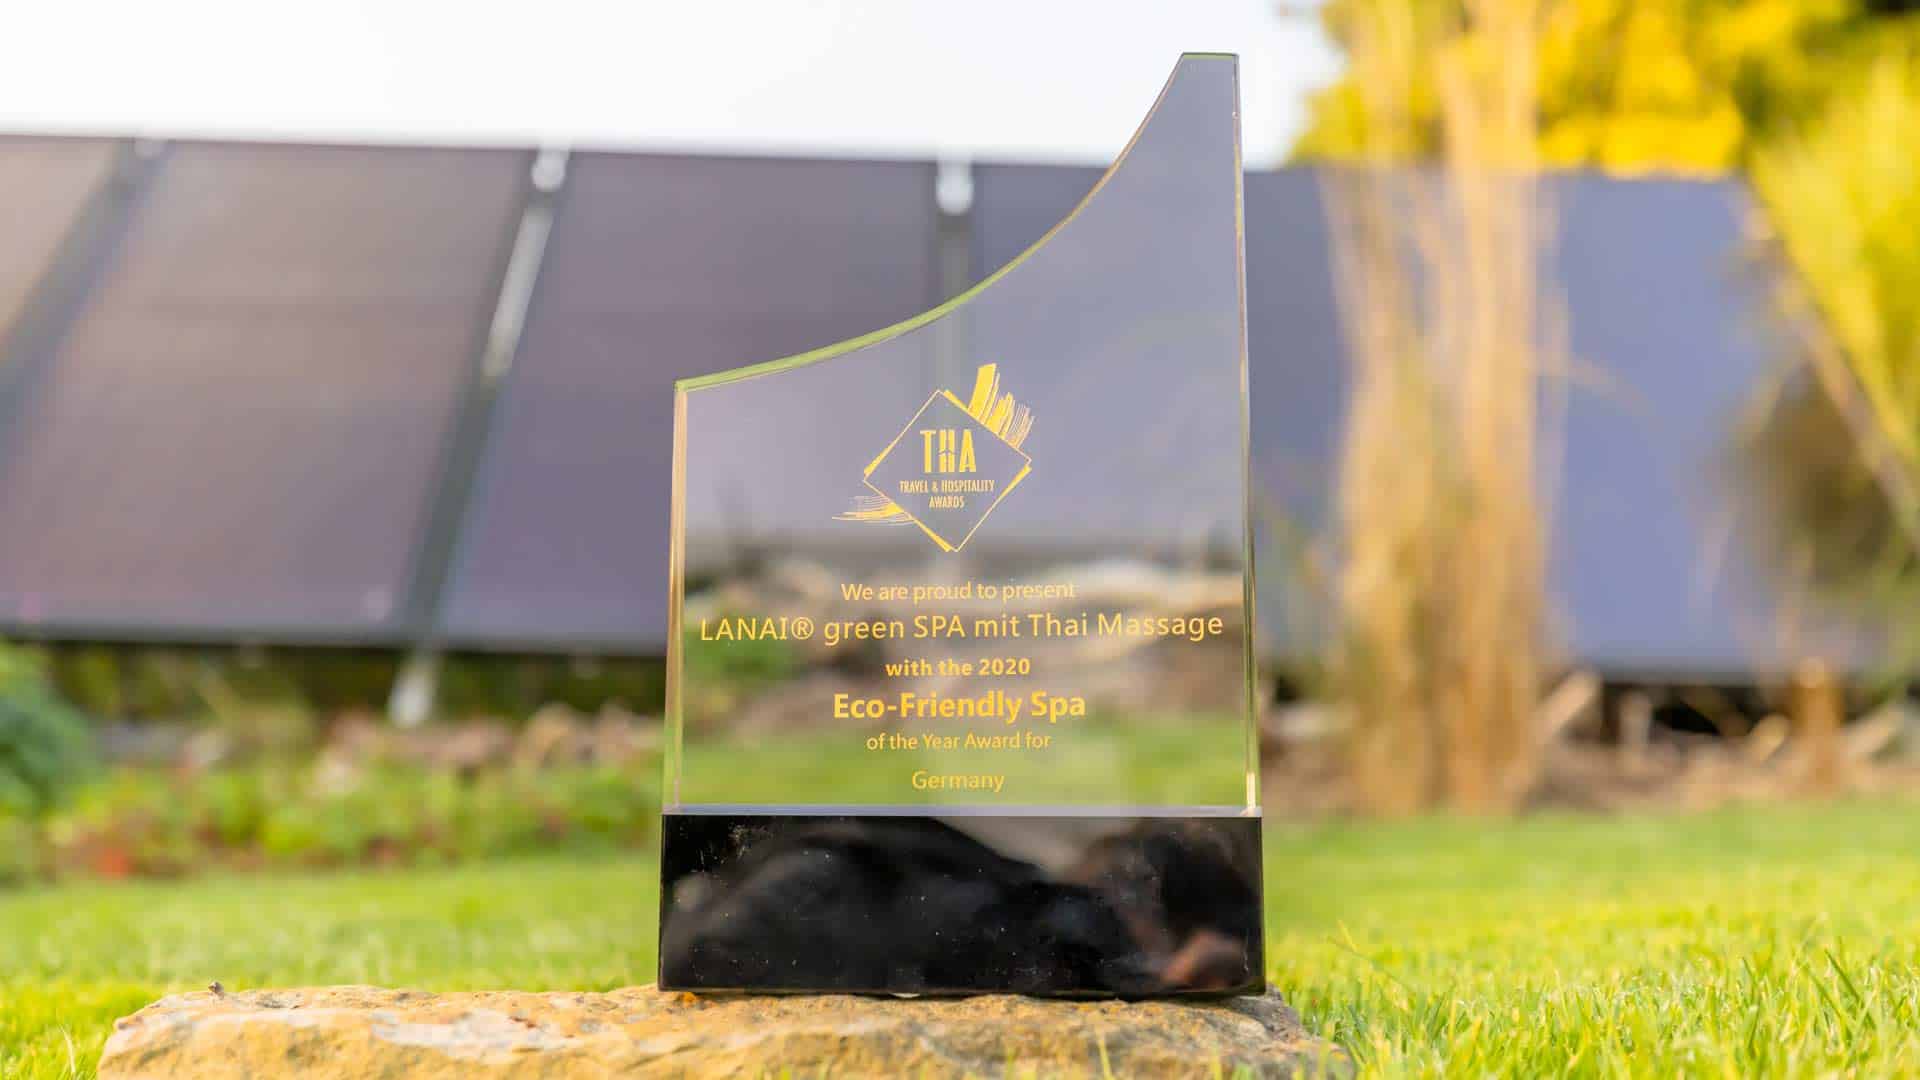 Glas Award von Travel & Hospitality Awards Kategorie "green SPA" im Garten auf Gras